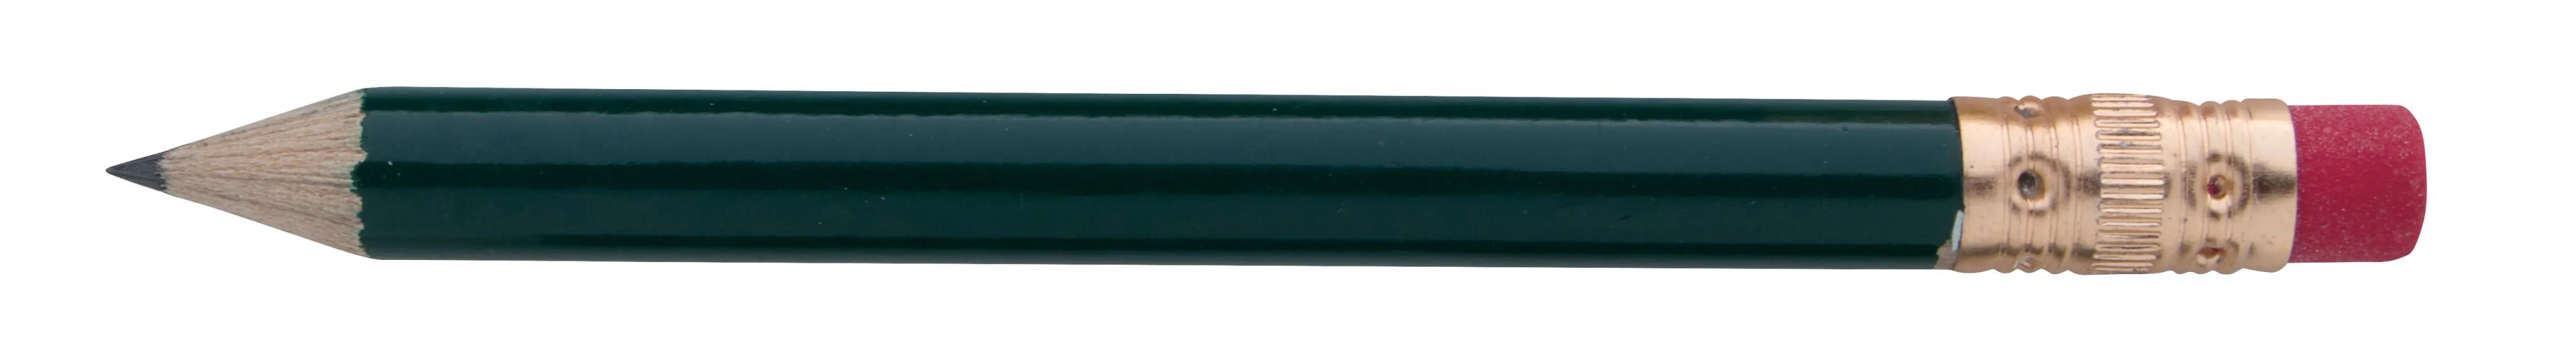 Round Golf Pencil with Eraser 2 of 13